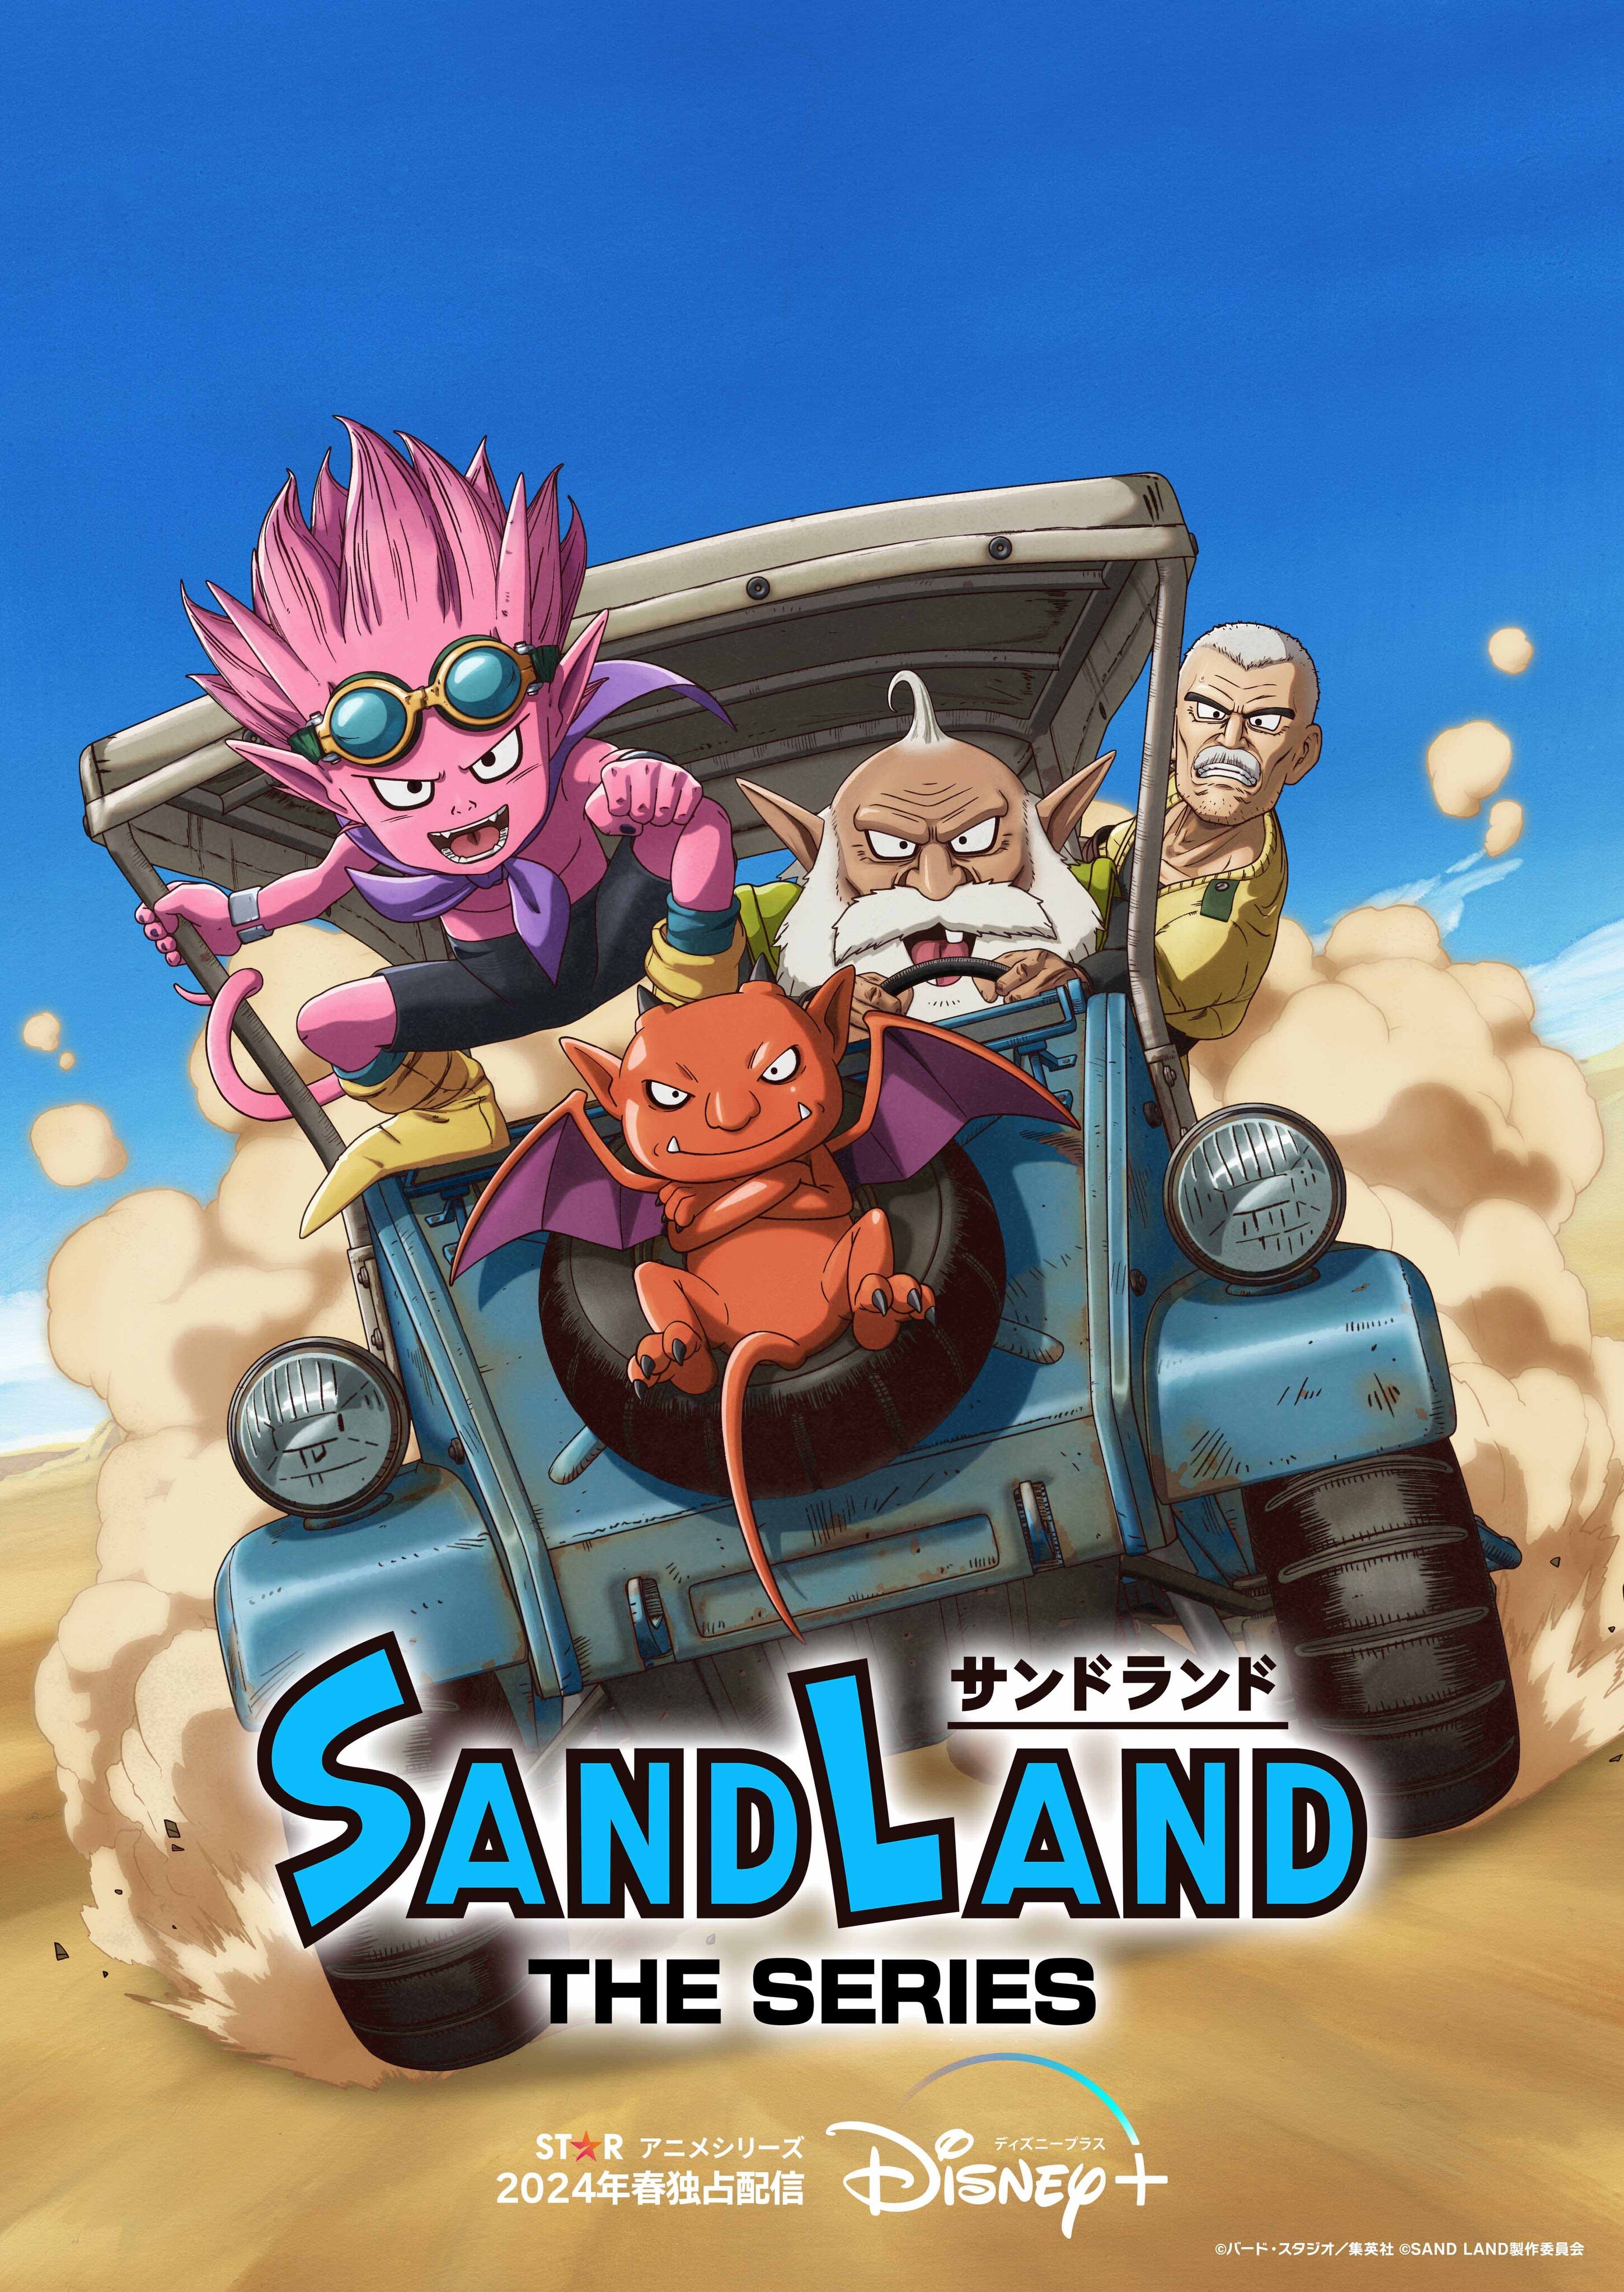 鳥山明原作『SAND LAND（サンドランド）』の新作アニメシリーズ『SAND LAND: THE  SERIES』が2024年春にディズニープラス「スター」にて世界独占配信決定！｜Disney+（ディズニープラス）公式